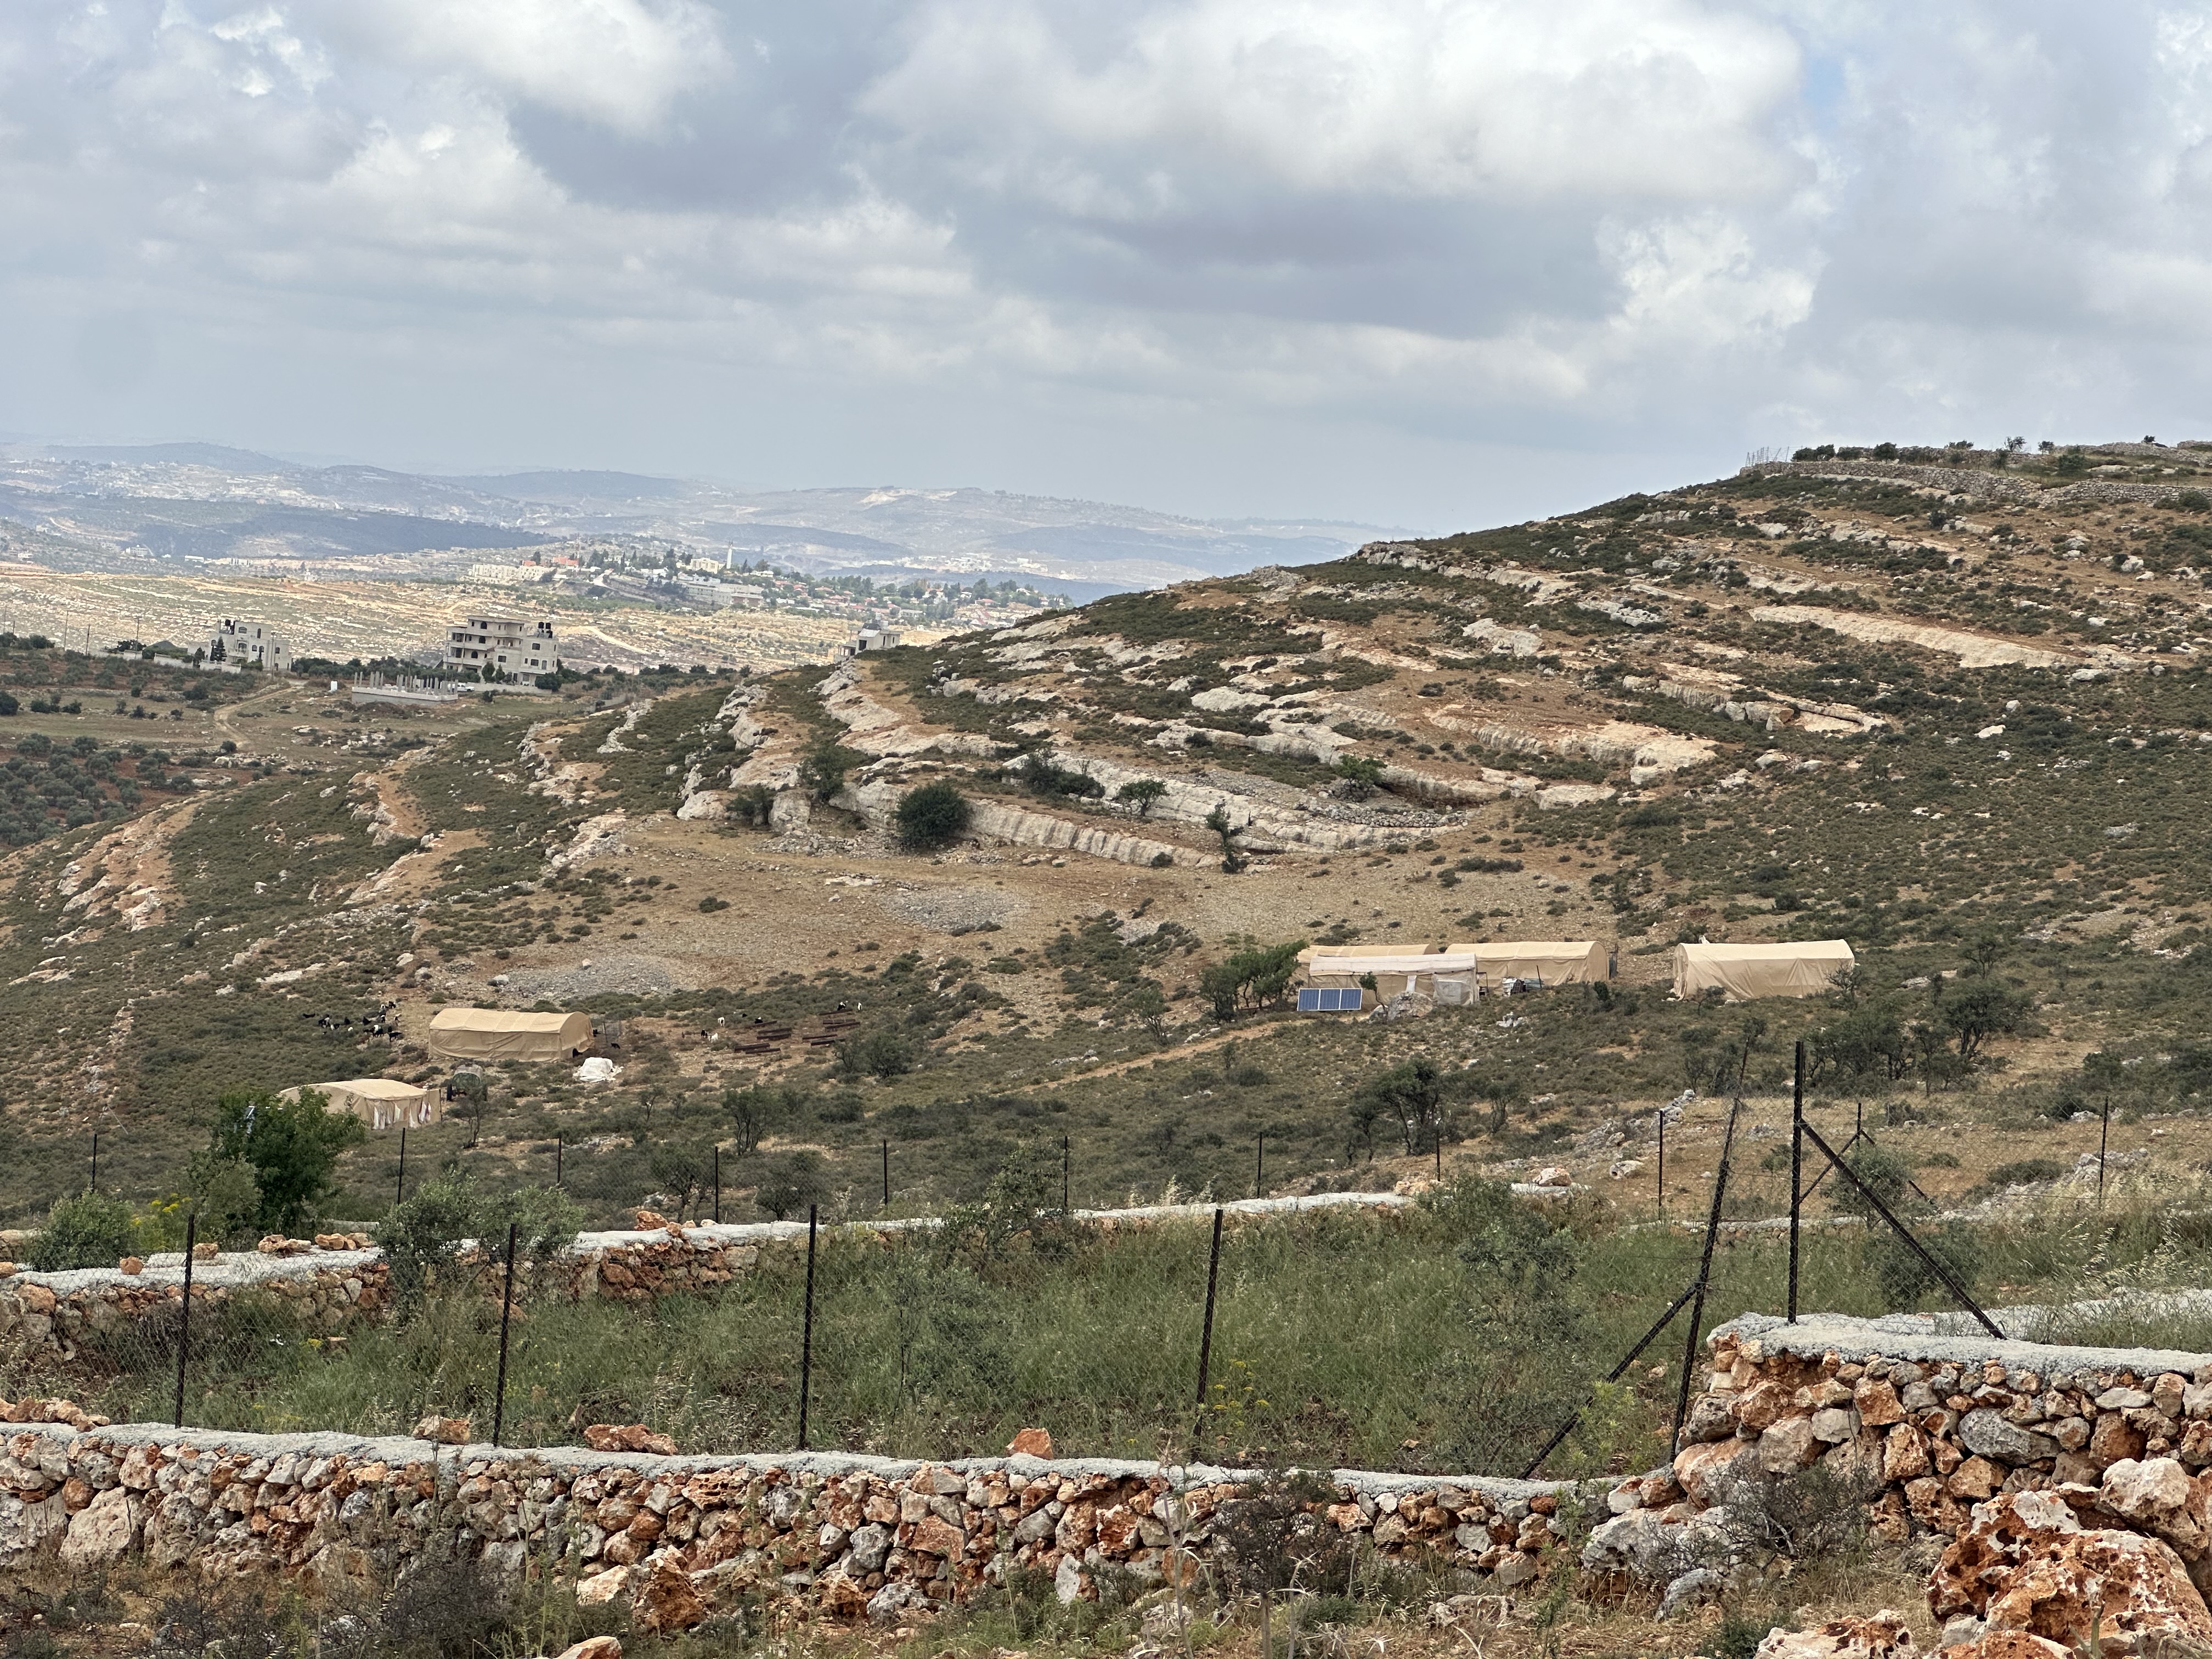 تظهر مدينة روابي الحديثة، خلف خيمة "موسى" في المكان الذي انتقلوا إليه قرب المزرعة الشرقية